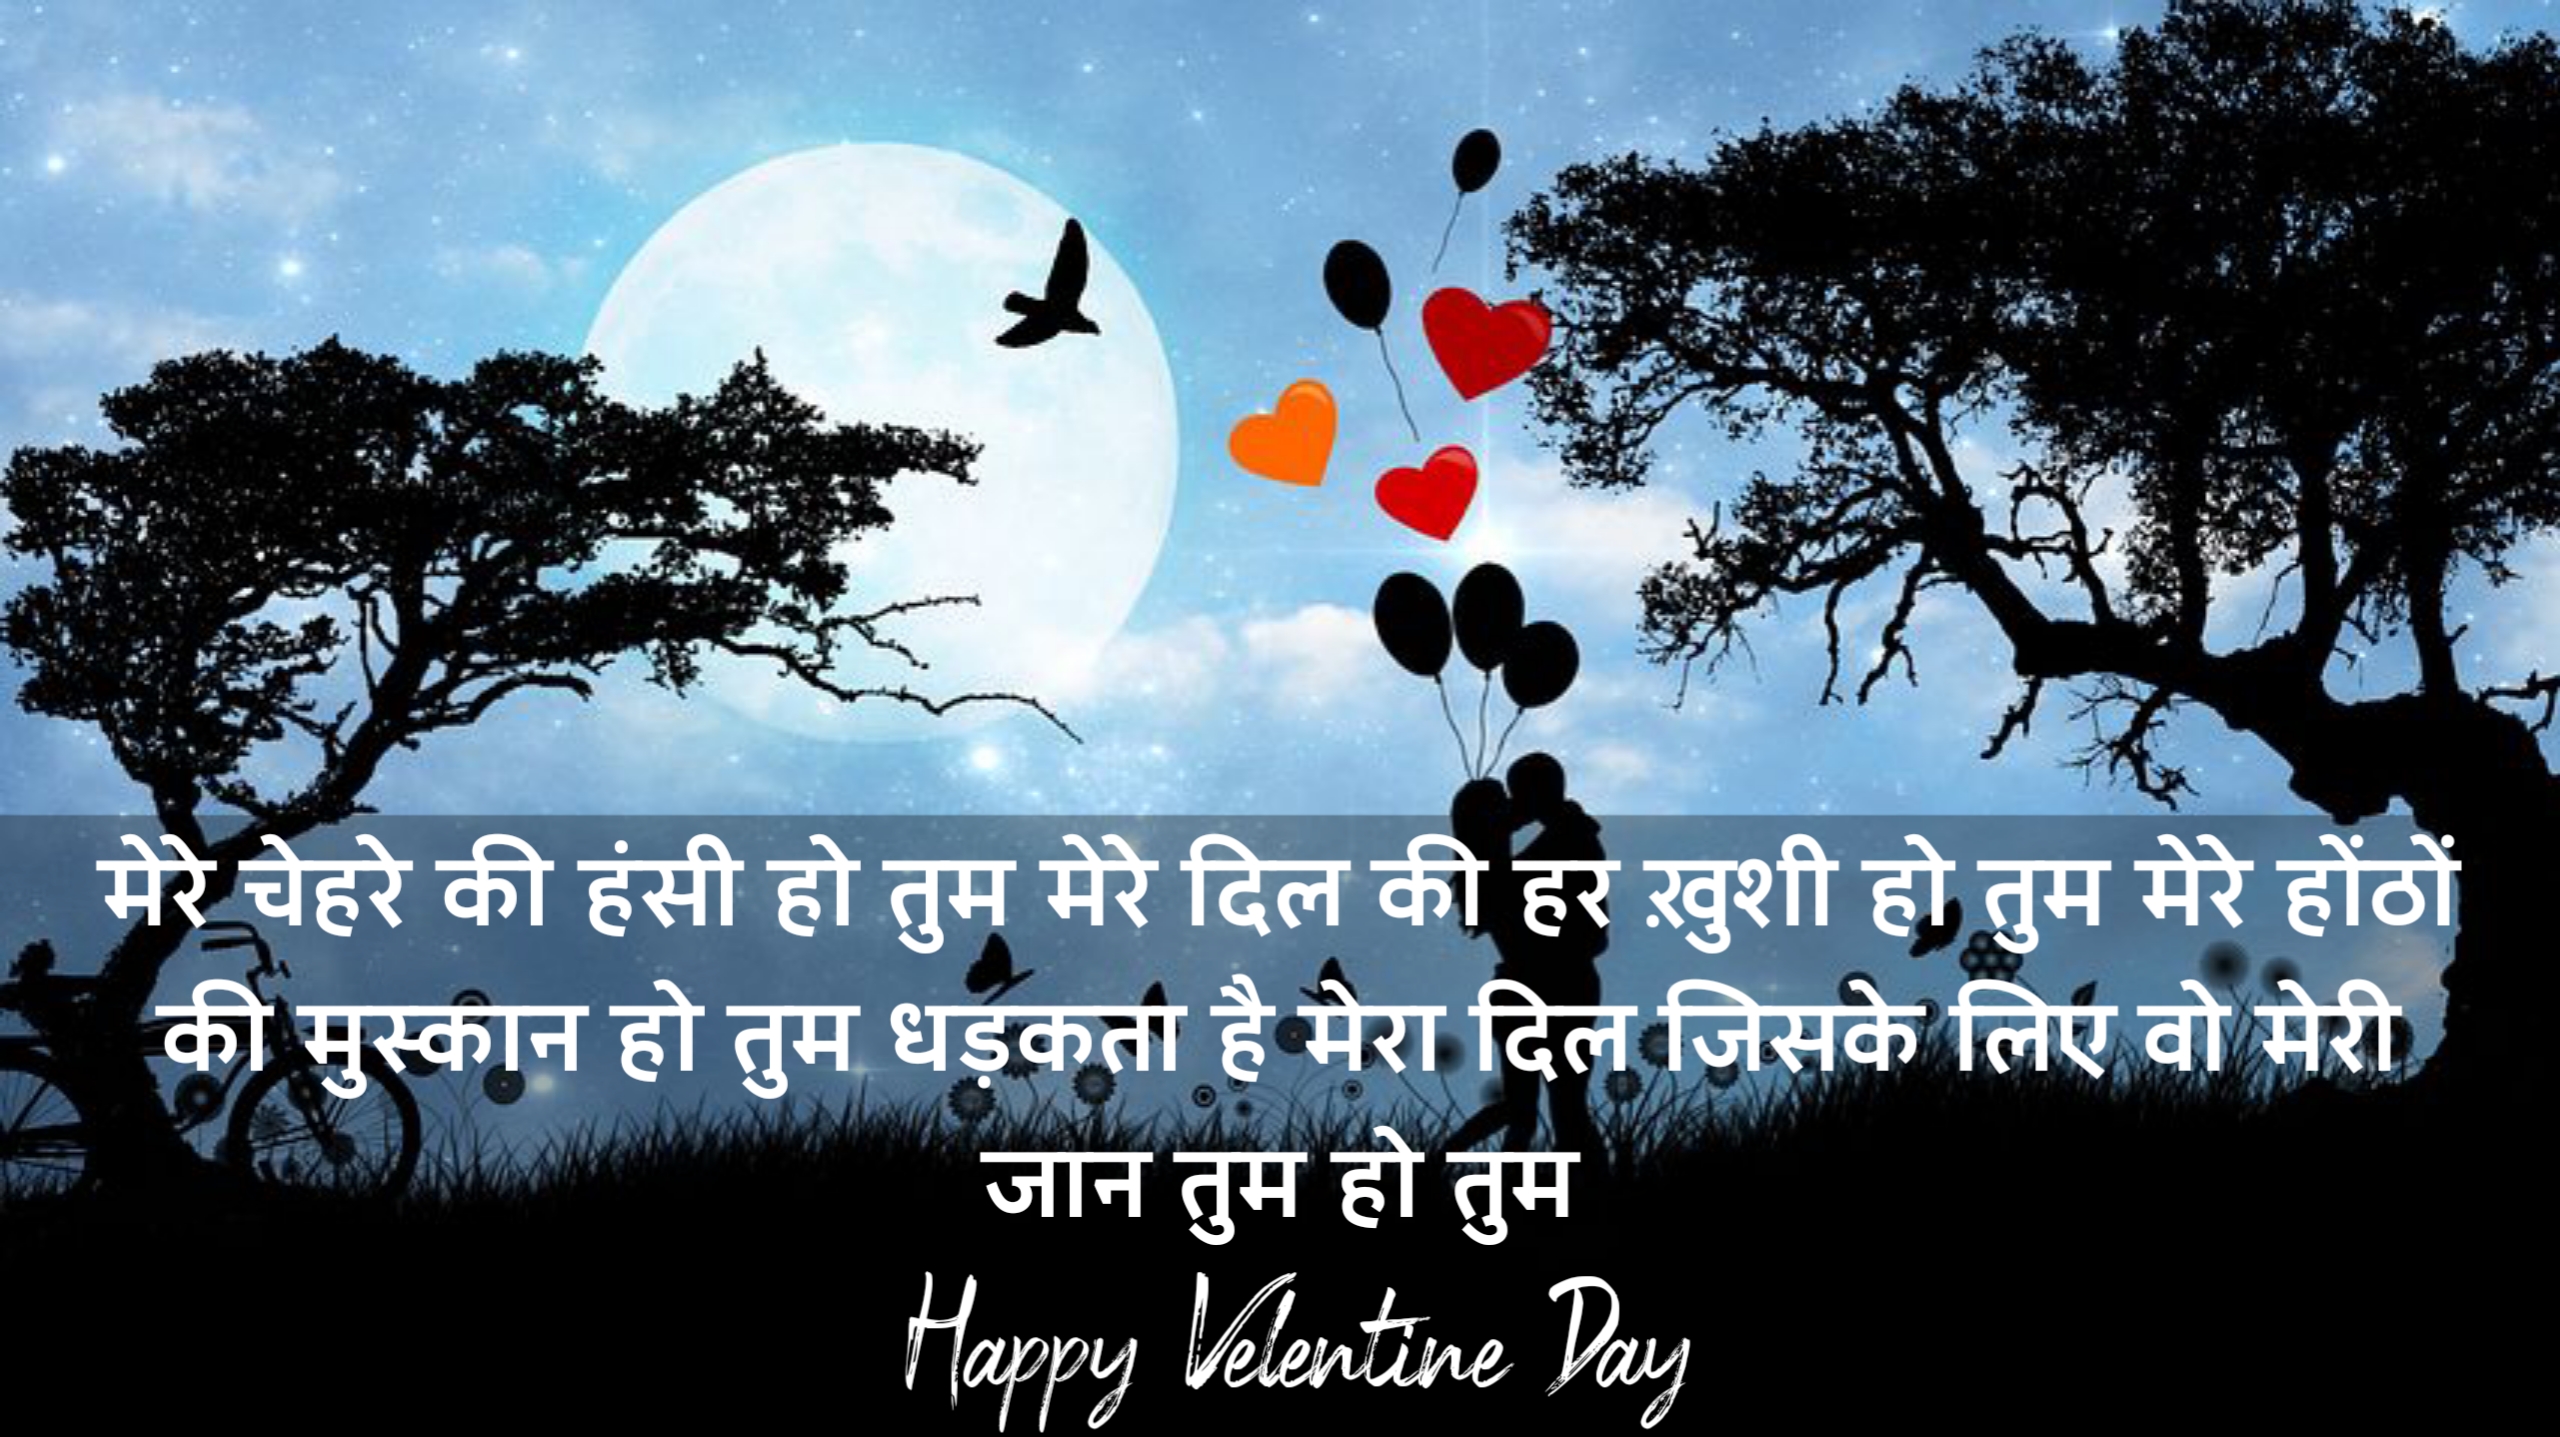 हैप्पी वेलेंटाइन डे शायरी इन हिंदी 2024, happy Valentine day shayari in Hindi 2024, Happy Valentine day shayari status quotes in Hindi 2024,Happy-Valentine-day-image-in-Hindi 2024,Happy-Valentine-day-image-2024,Happy-Valentine-day whatsapp status in hindi 2024